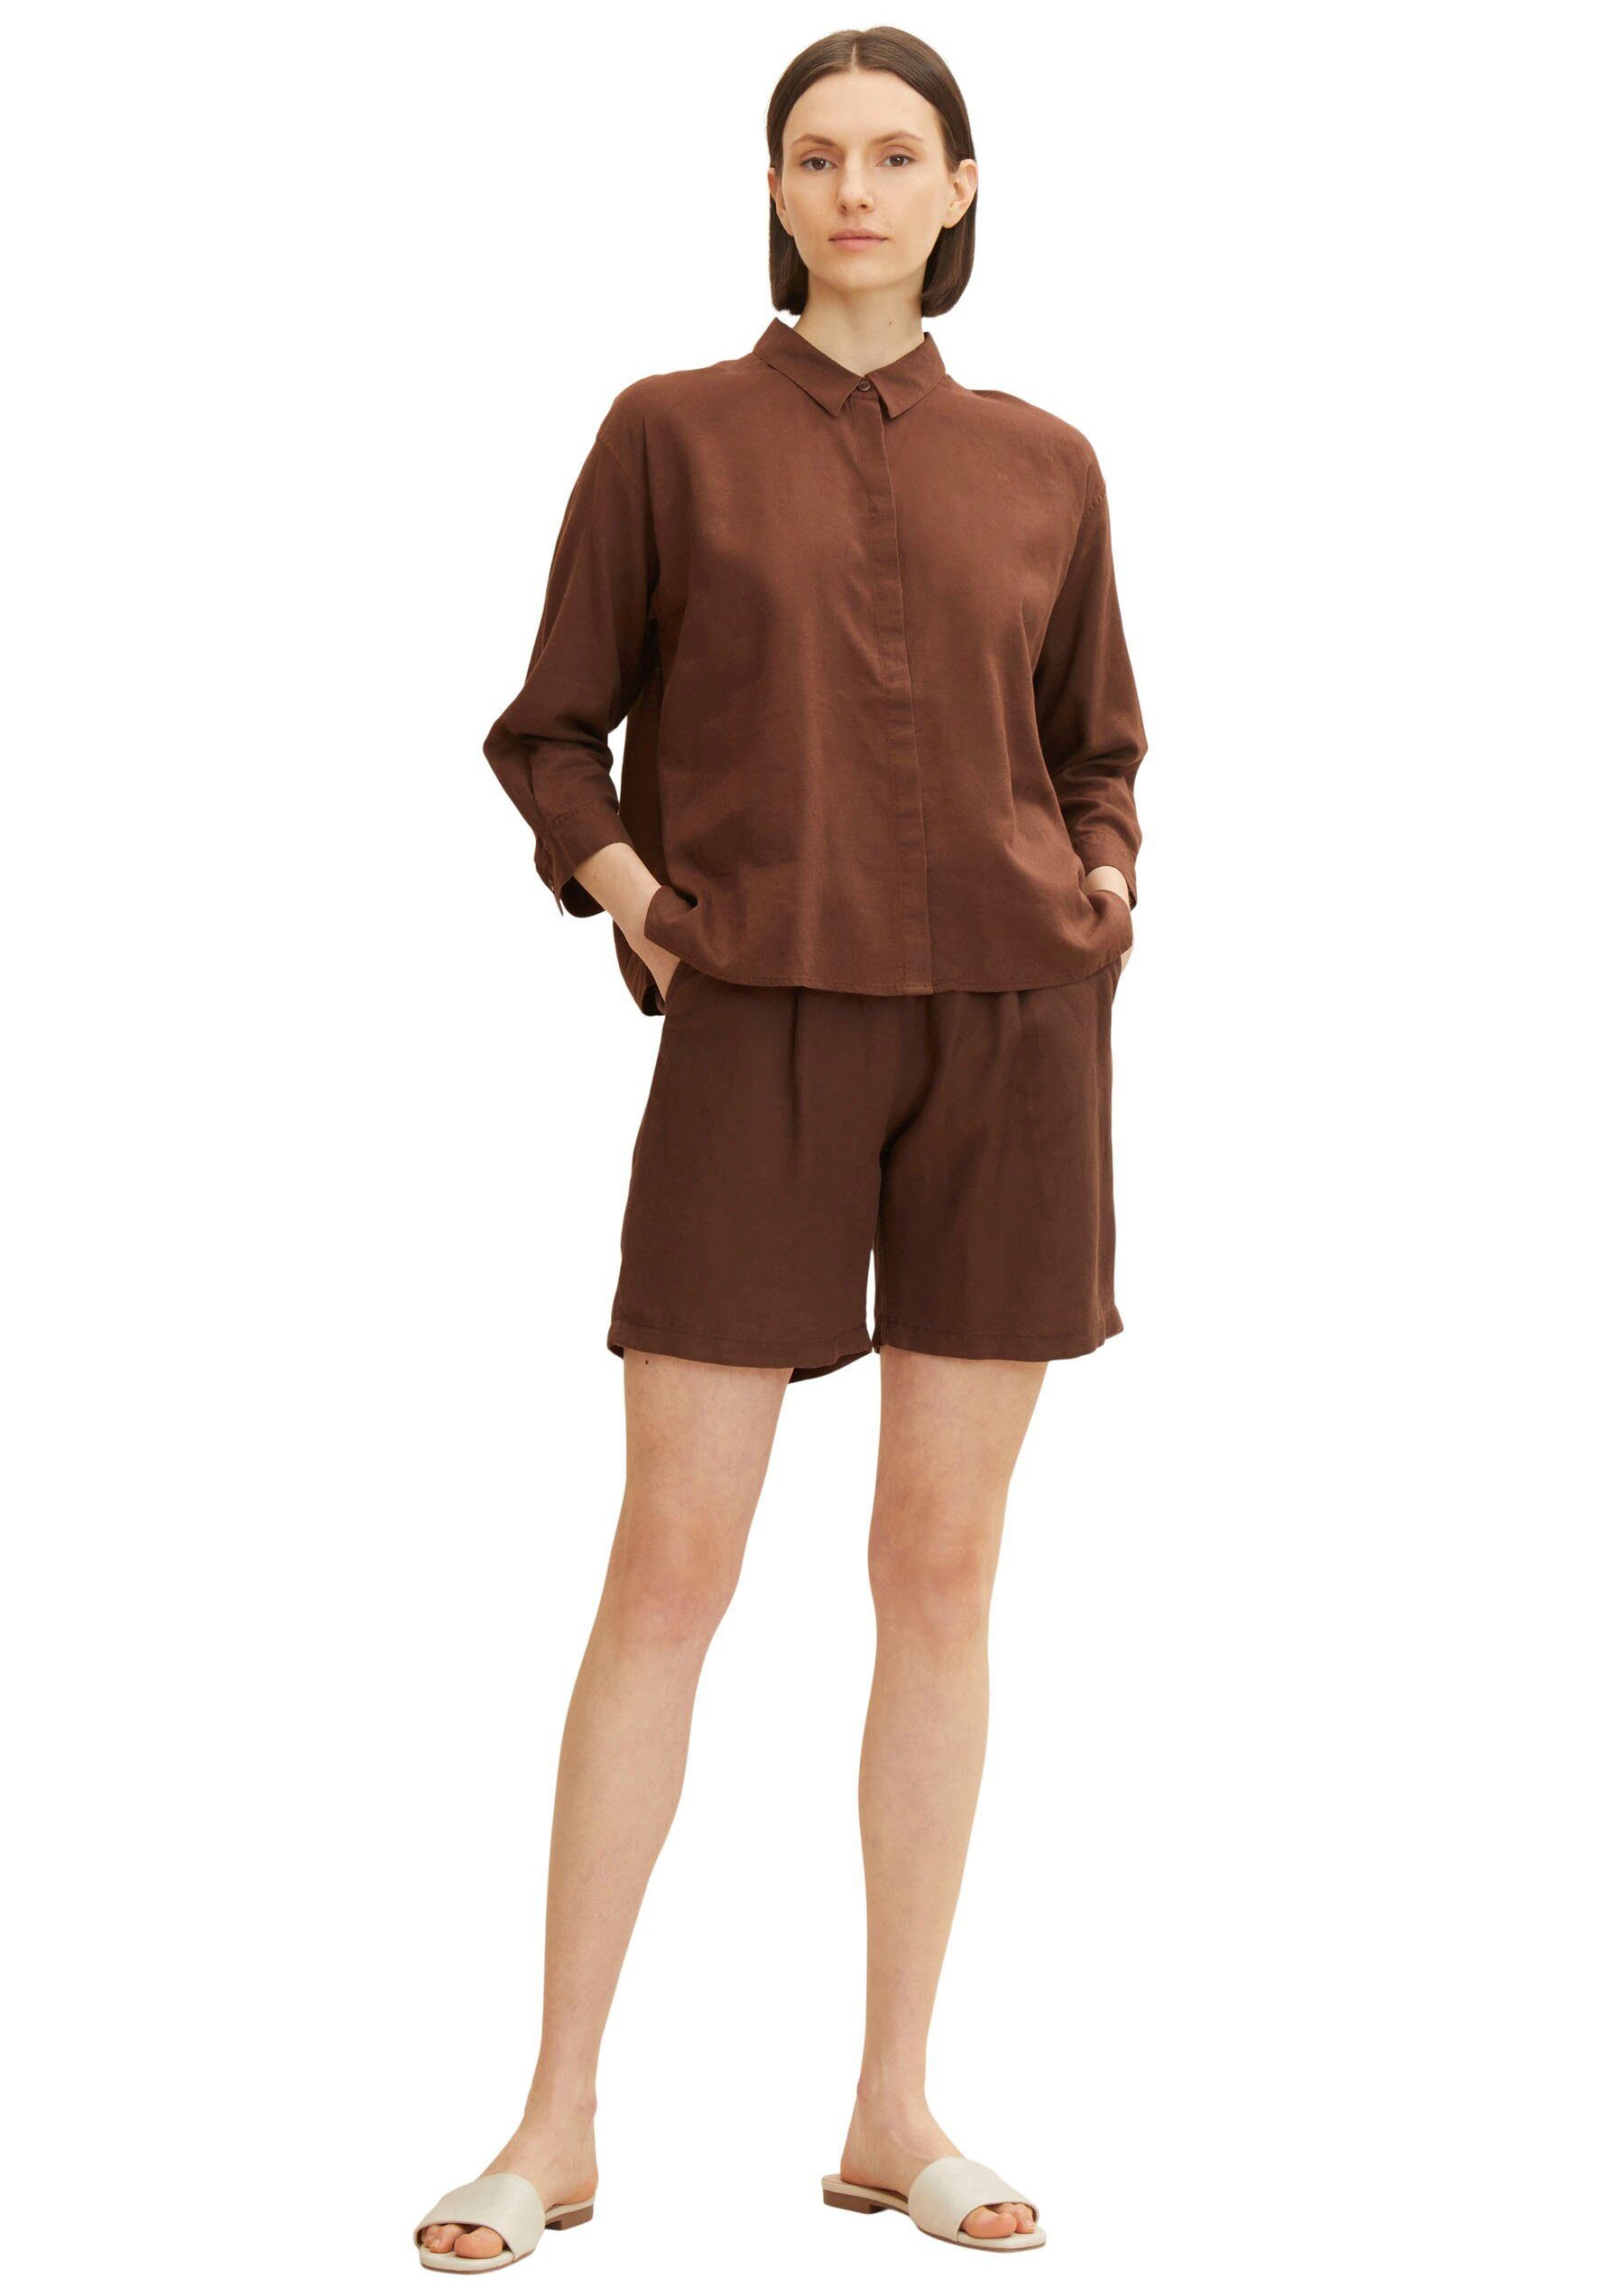 TOM TAILOR Shorts mit Leinenanteil elastischem chocolate und brown Bund